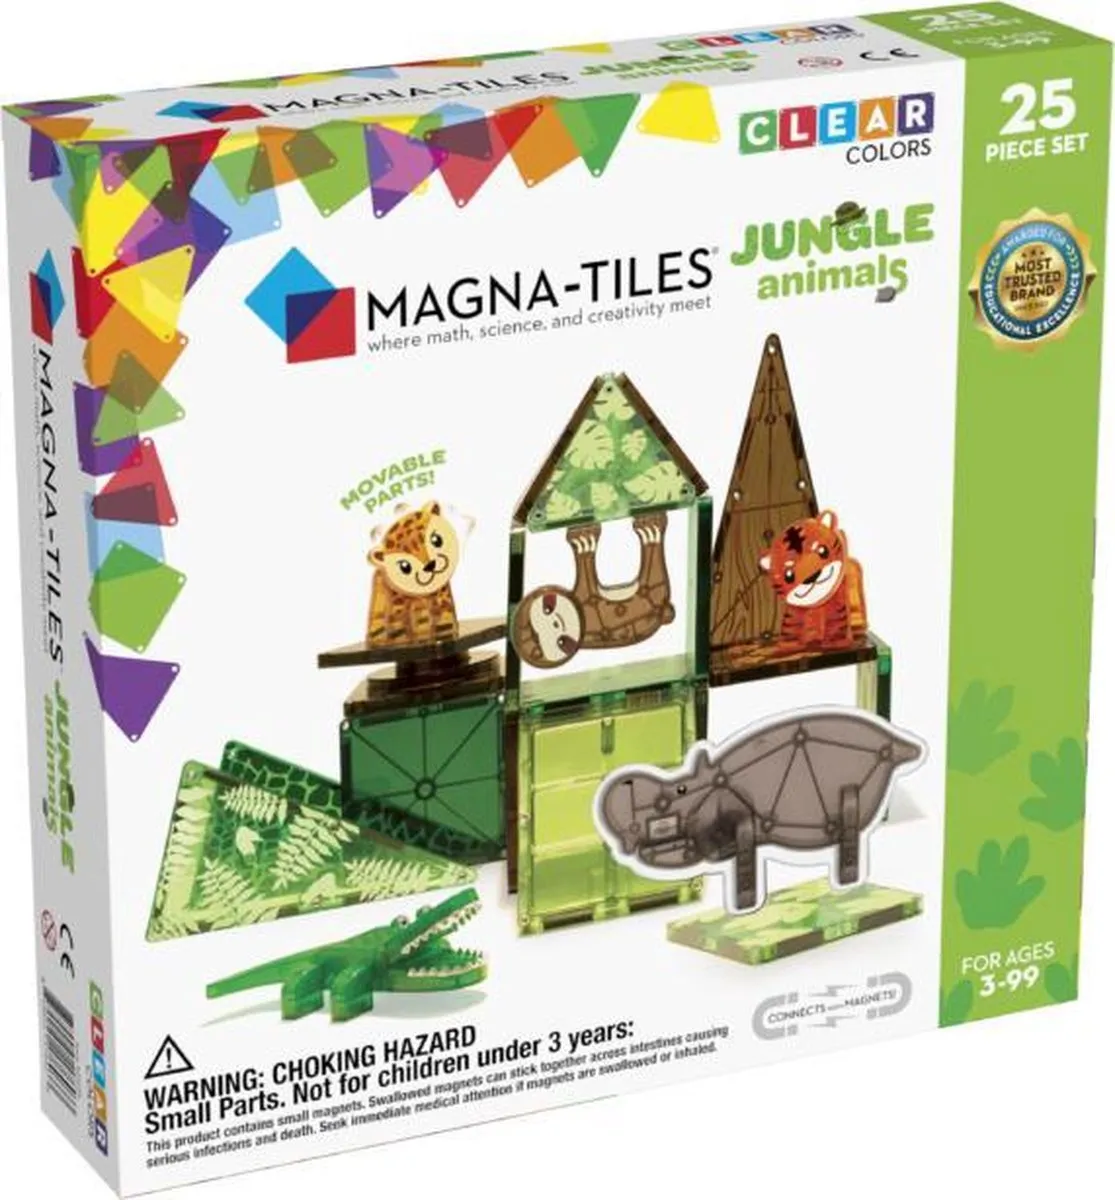 Magna-Tiles - Jungle Animals - bouwspeelgoed - 25 piece set speelgoed